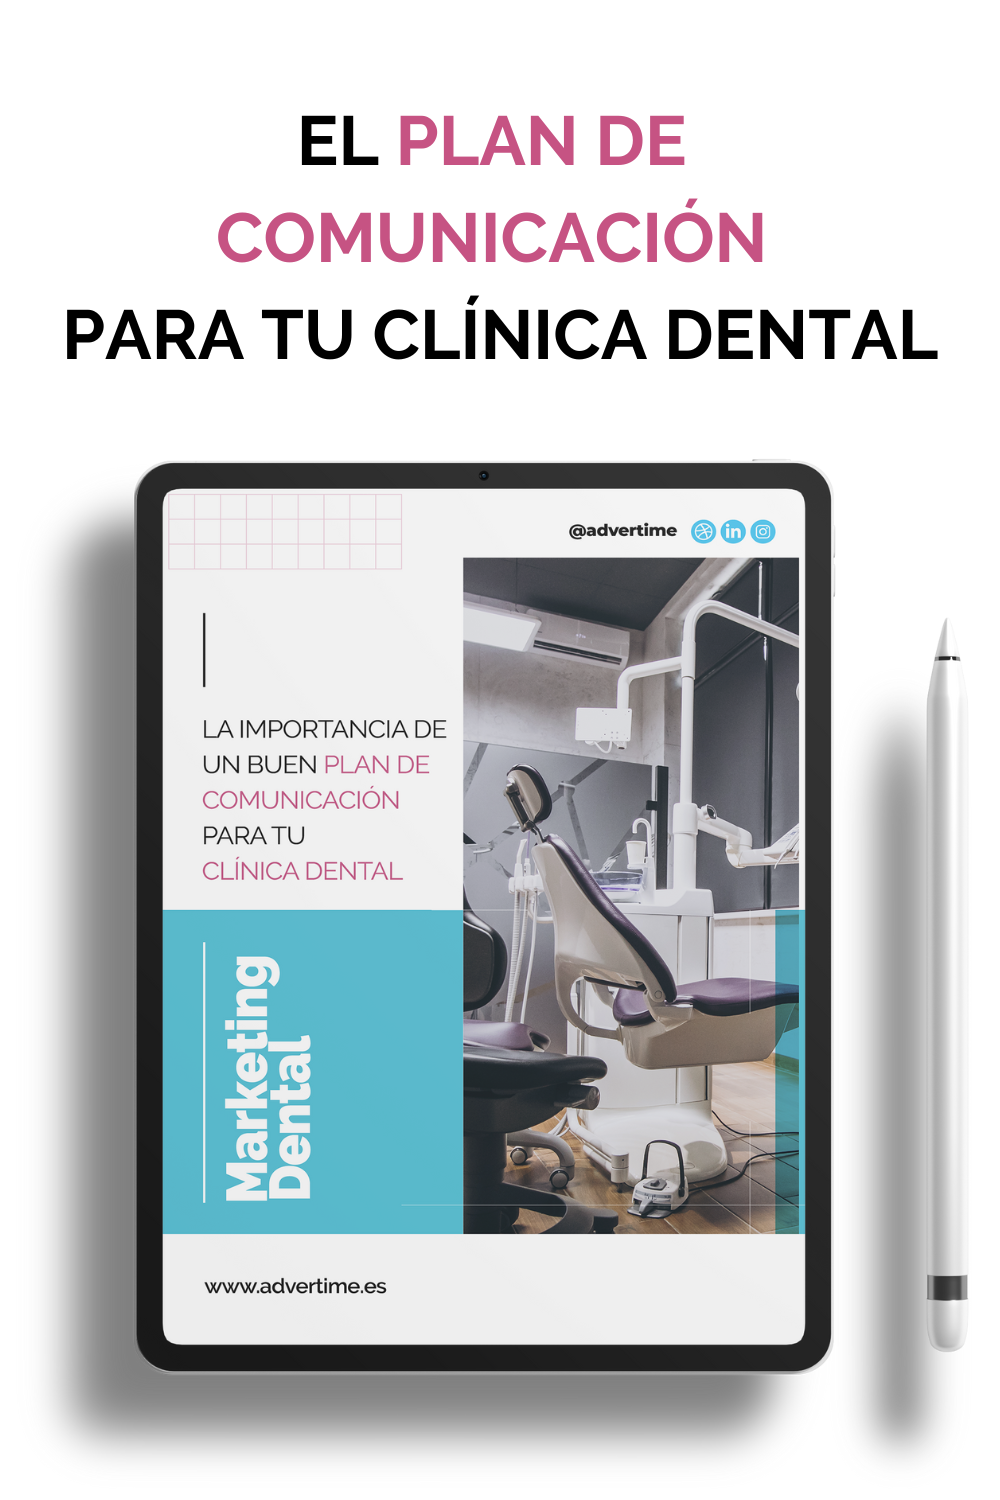 El plan de comunicación para tu clínica dental. Advertime: especialistas en marketing dental